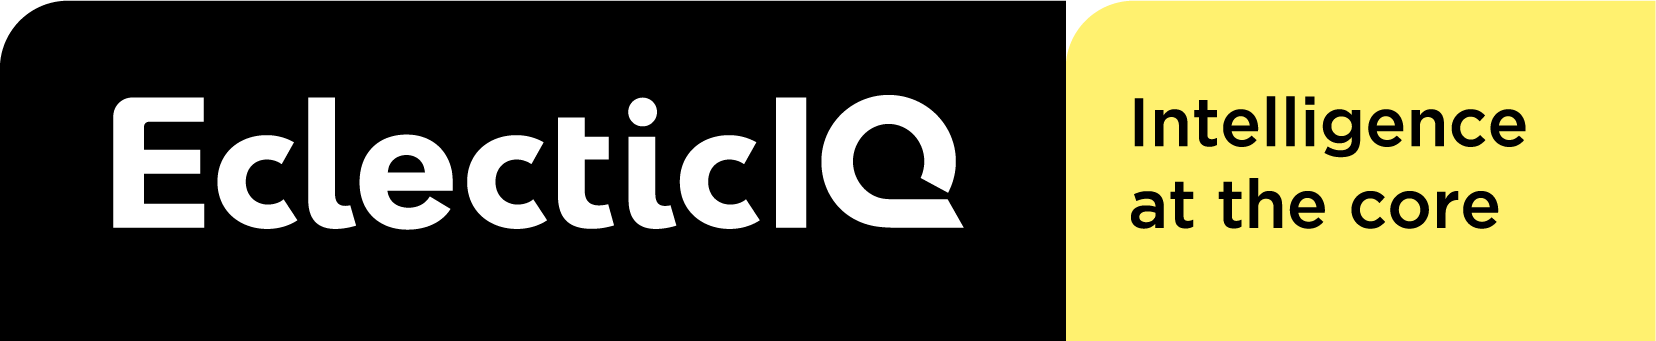 eclecticiq Logo